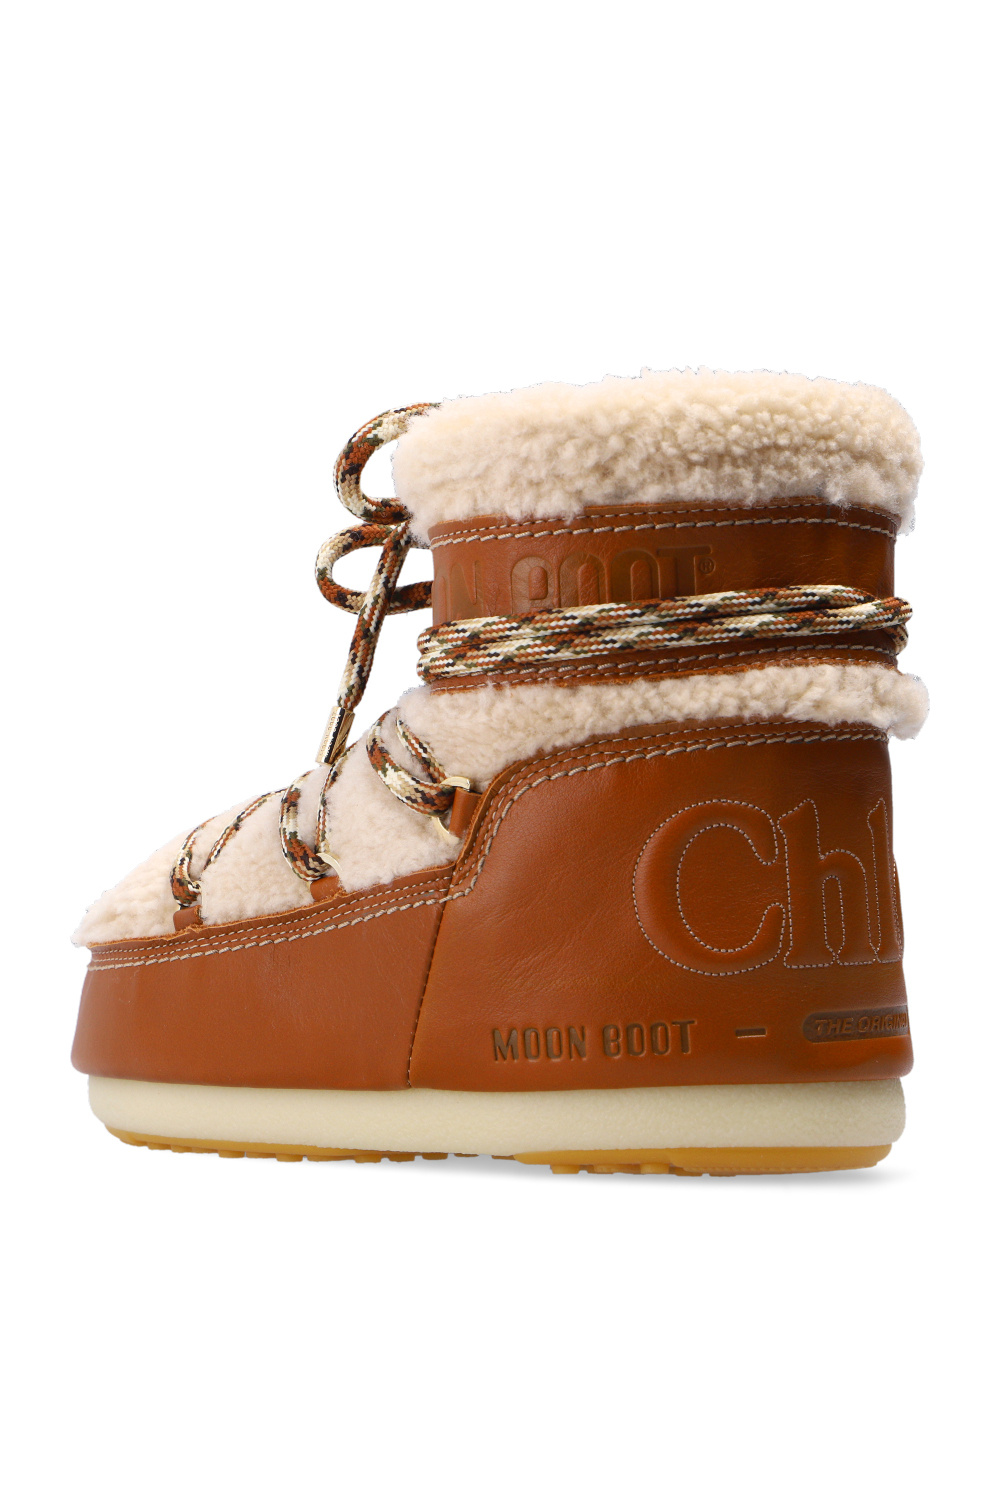 Chloé Chloé x Moon Boots | Women's Shoes | Vitkac